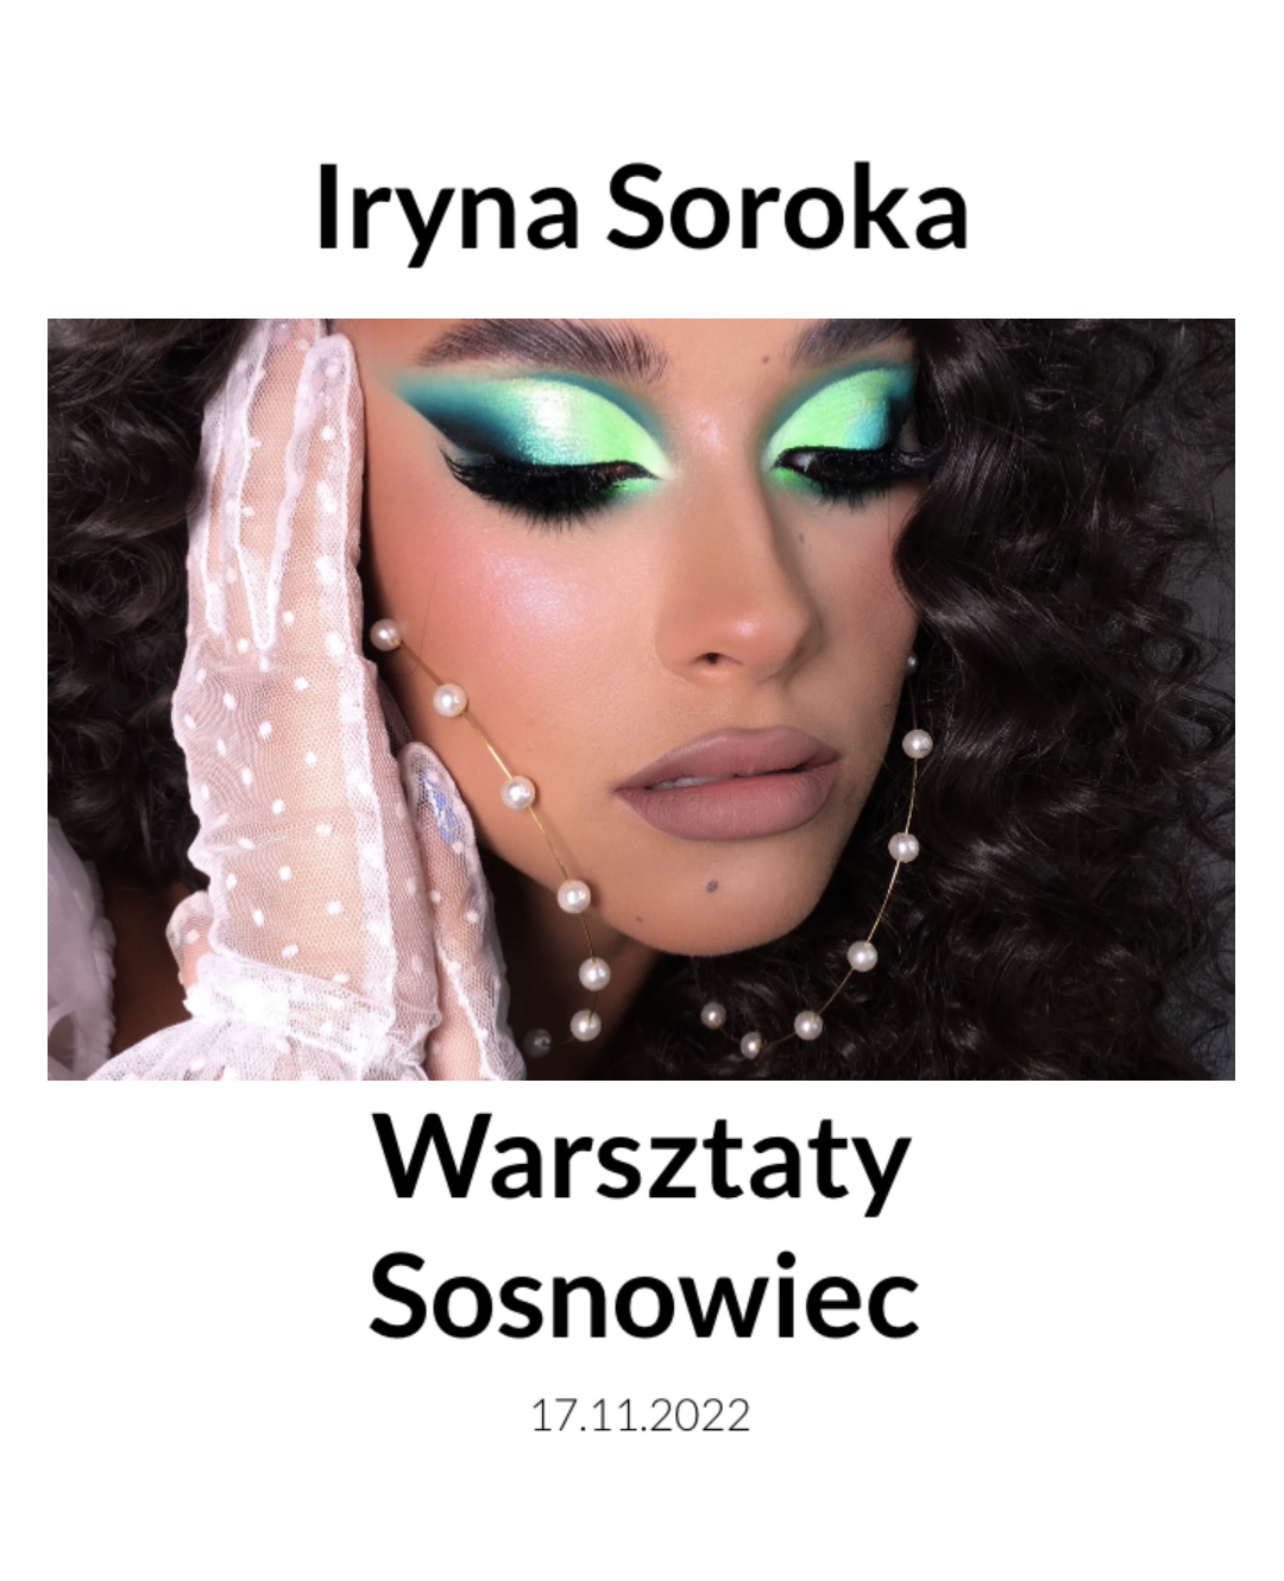 Iryna Soroka – Sosnowiec 17.11.2022